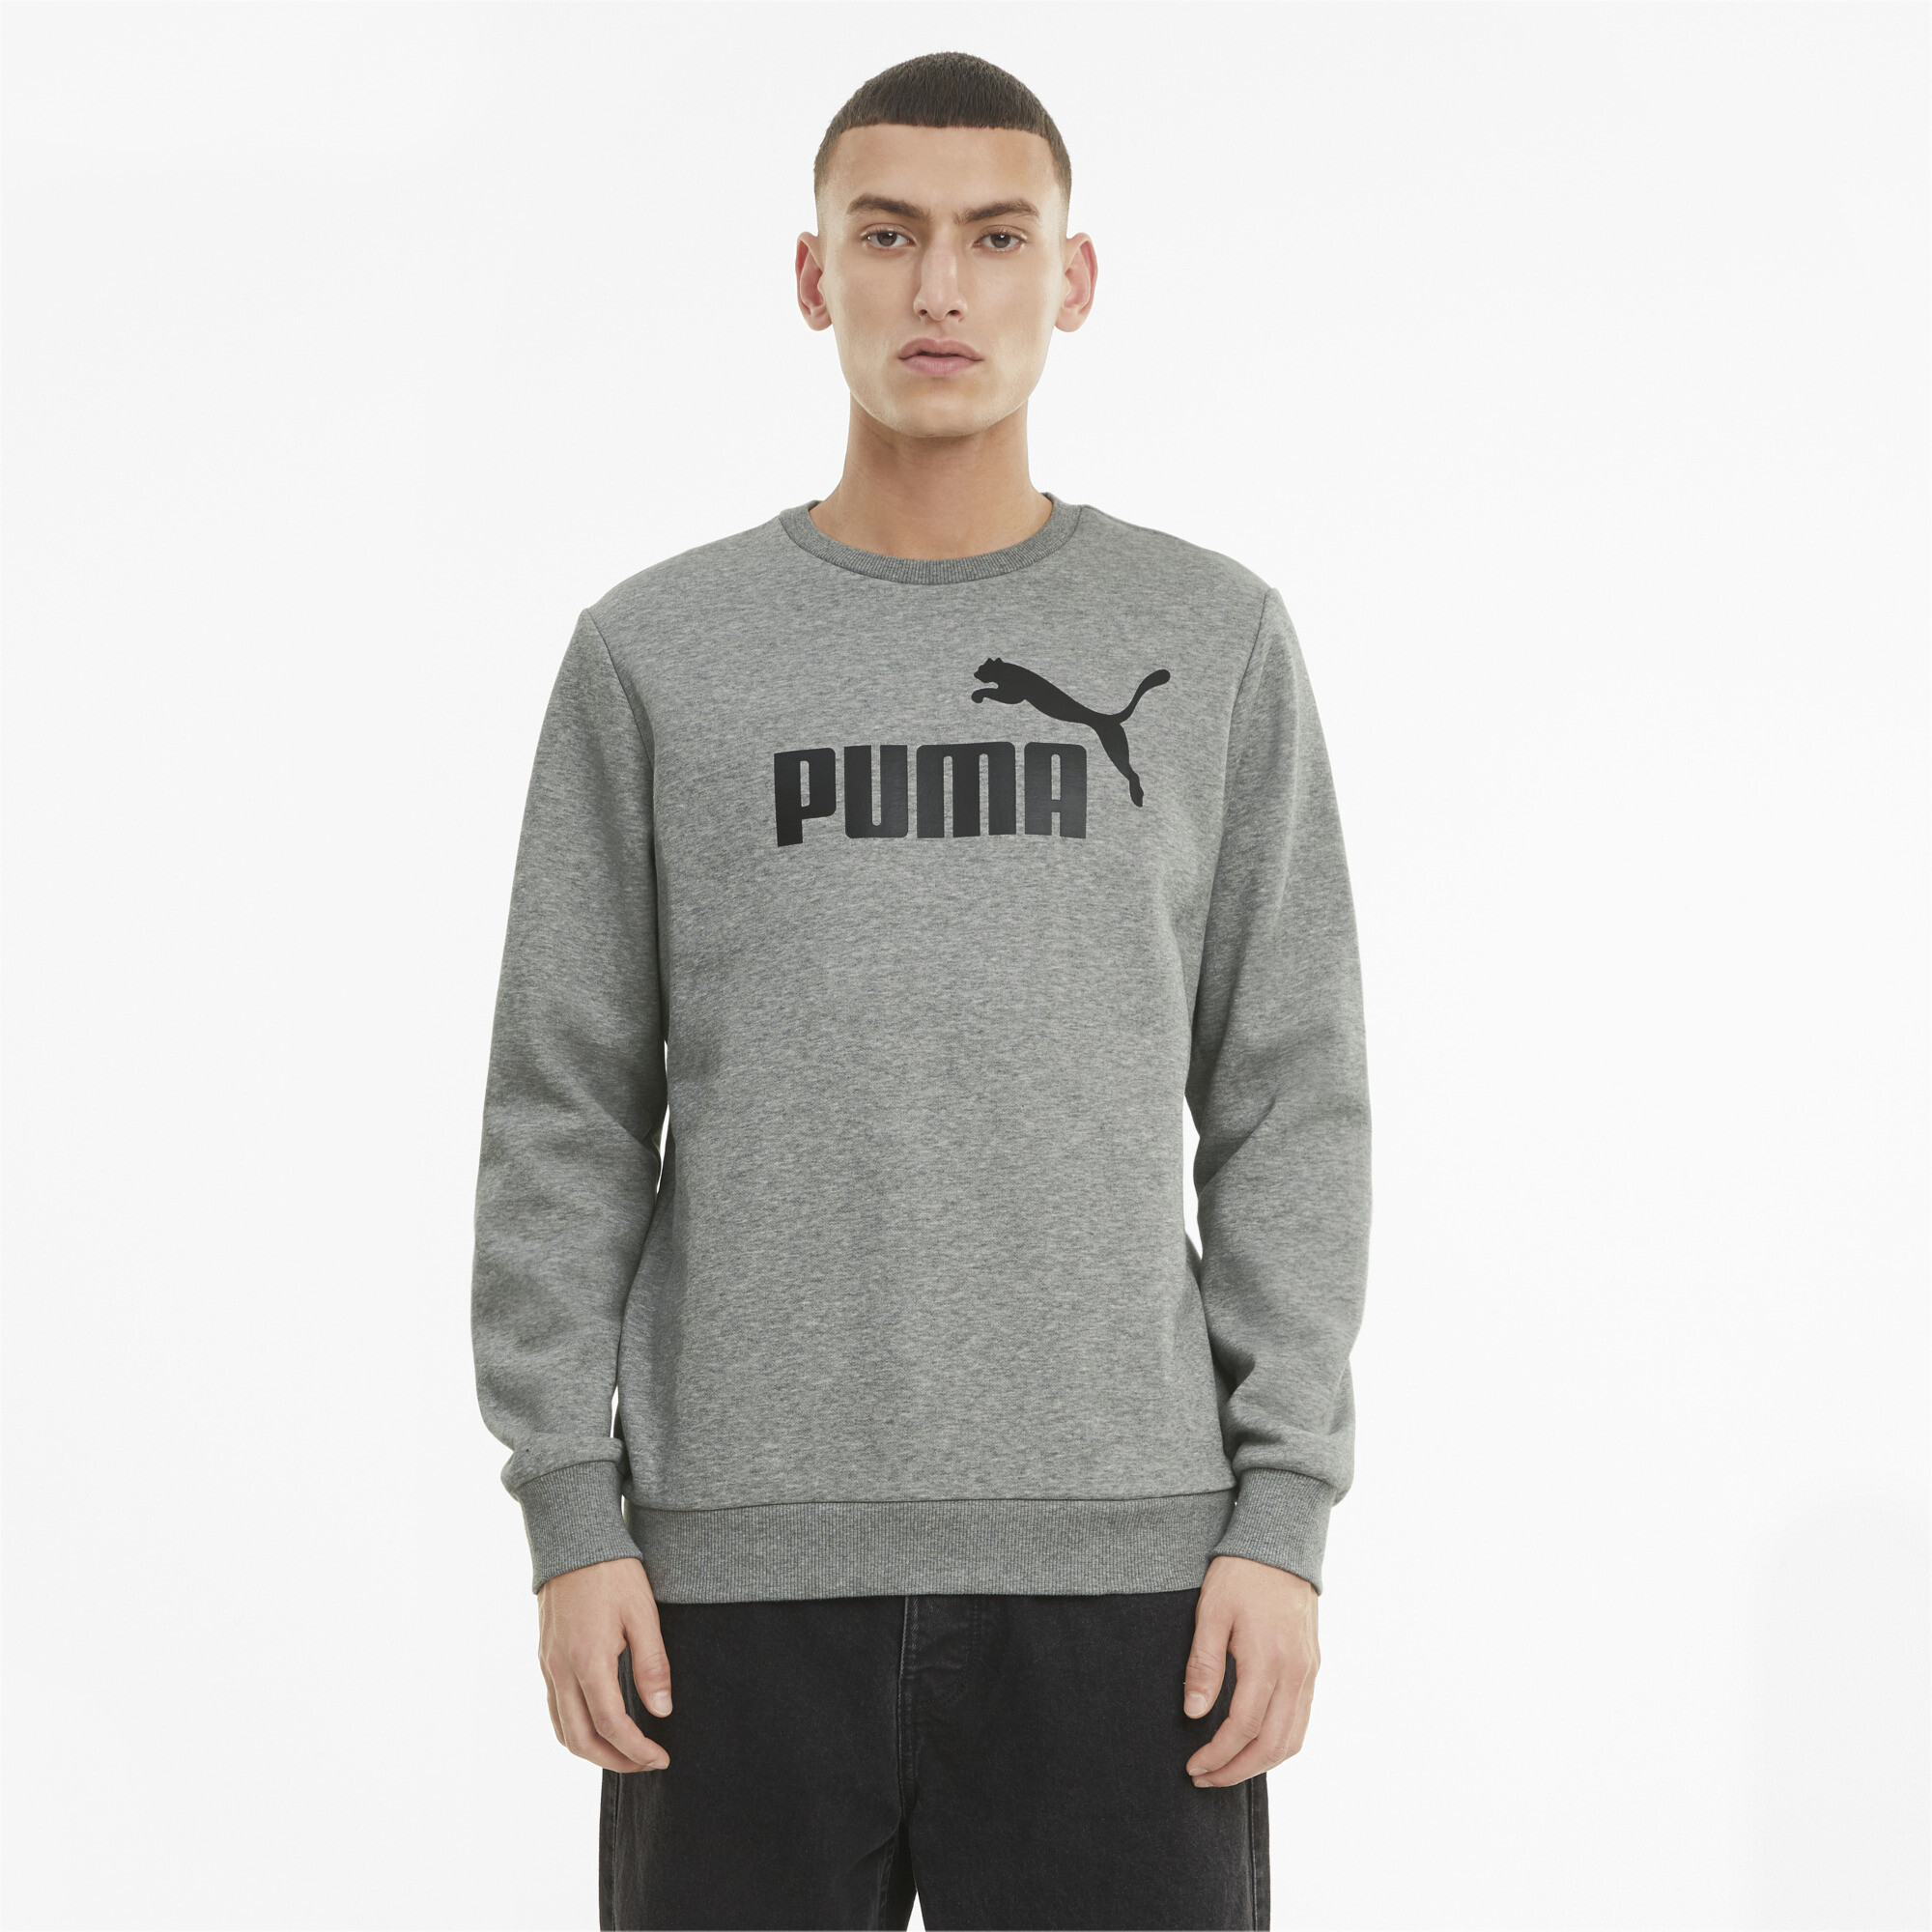 PUMA Essentials Big Logo Crew Neck Sweater Jumper Top Mens | eBay